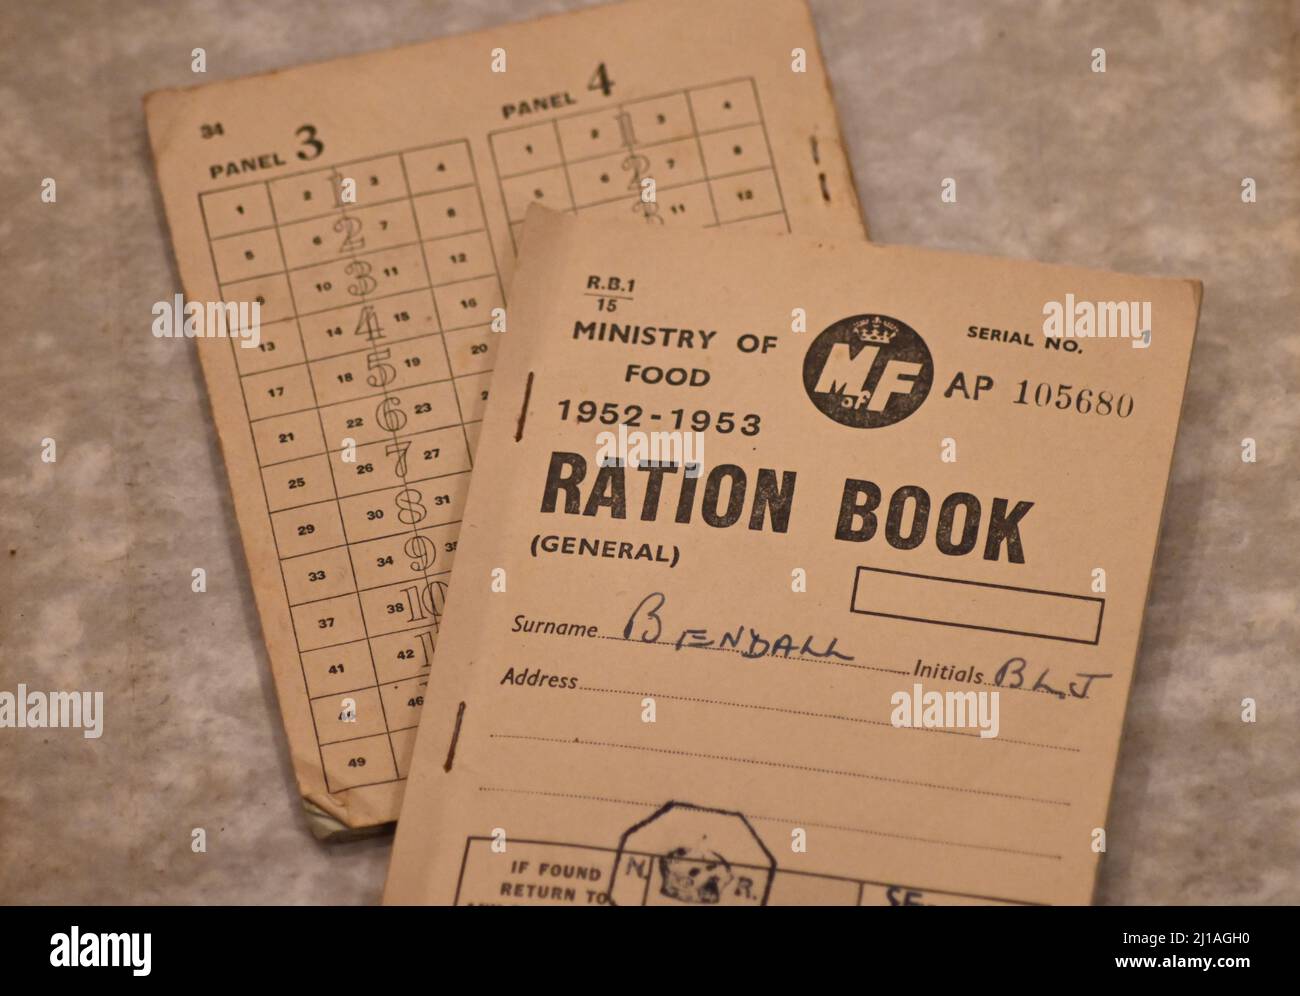 Ein Original-Rationsbuch, das vom Lebensmittelministerium von 1952 bis 1953 herausgegeben wurde Stockfoto